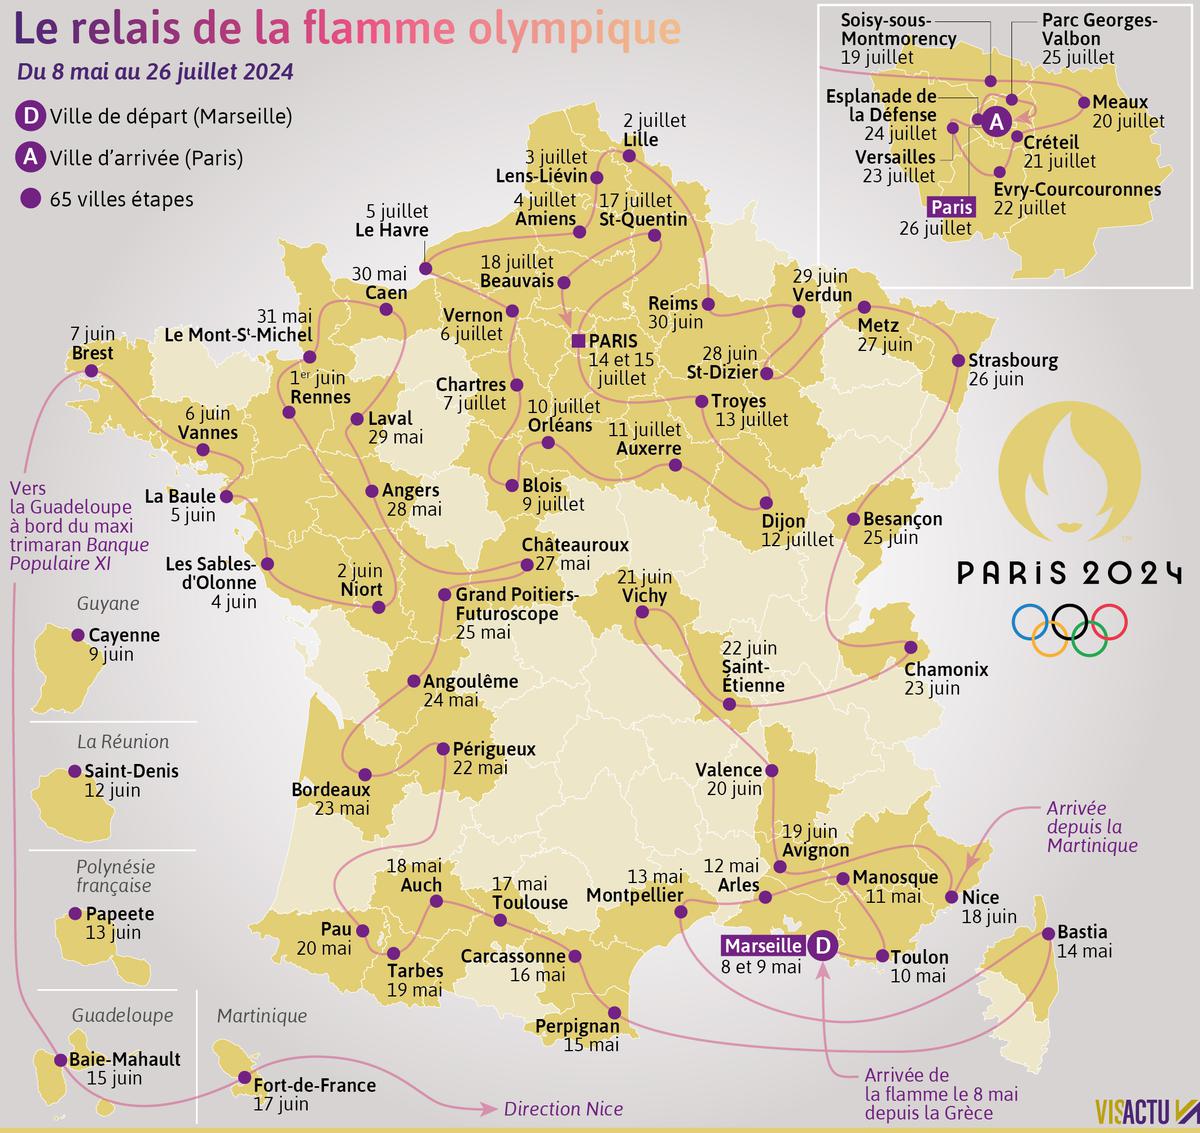 65 villes étapes accueilleront la flamme olympique dans toute la France  dont Caen, Niort, Le Havre et Troyes